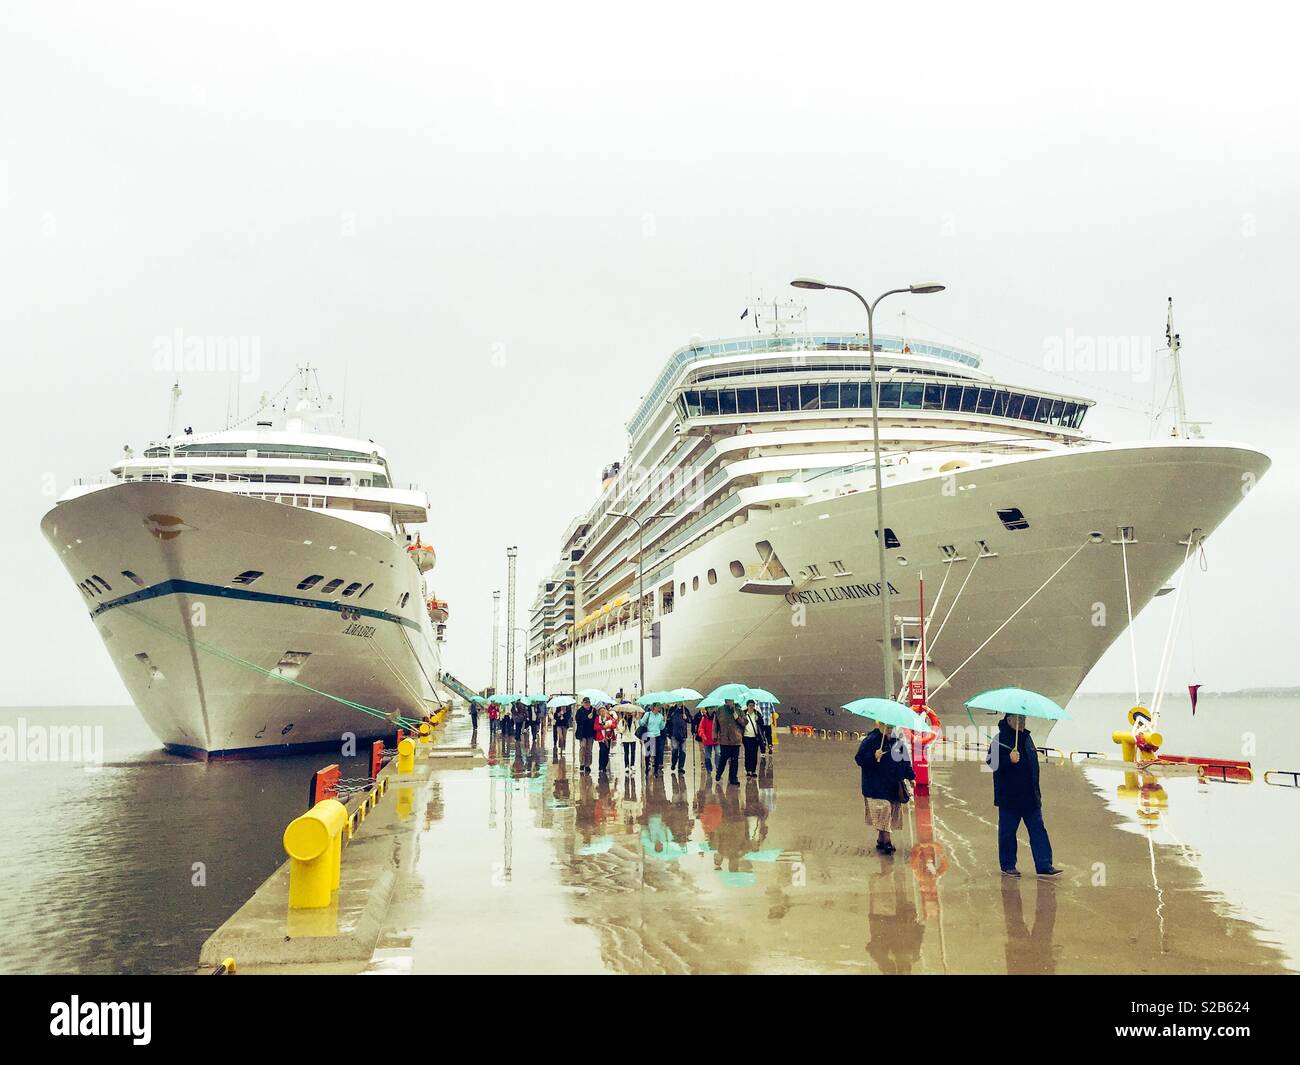 Cruise ships docked together while raining Stock Photo